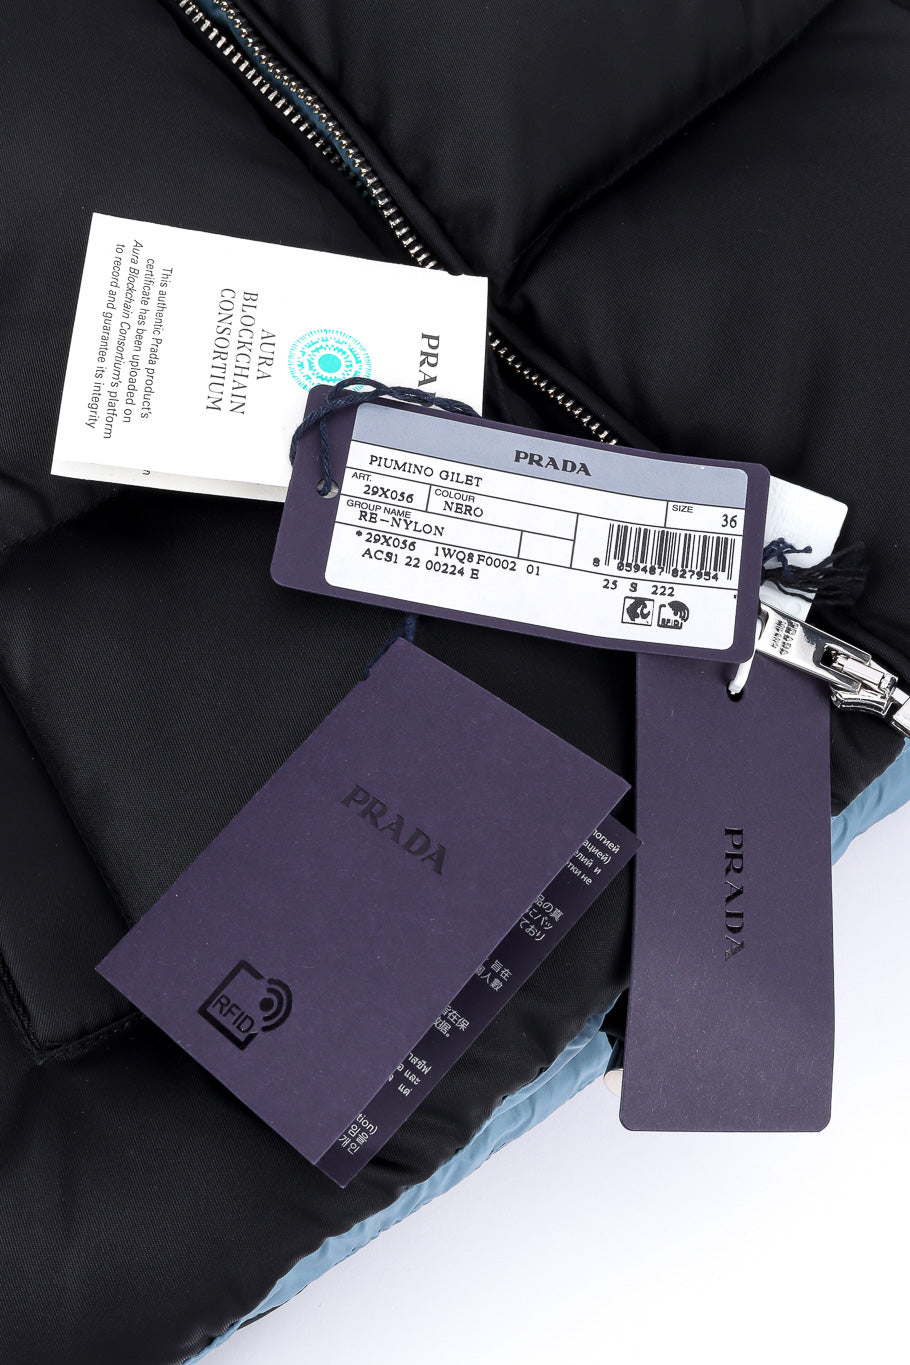 Prada Re-nylon Cropped Puffer Vest original tags closeup @Recessla